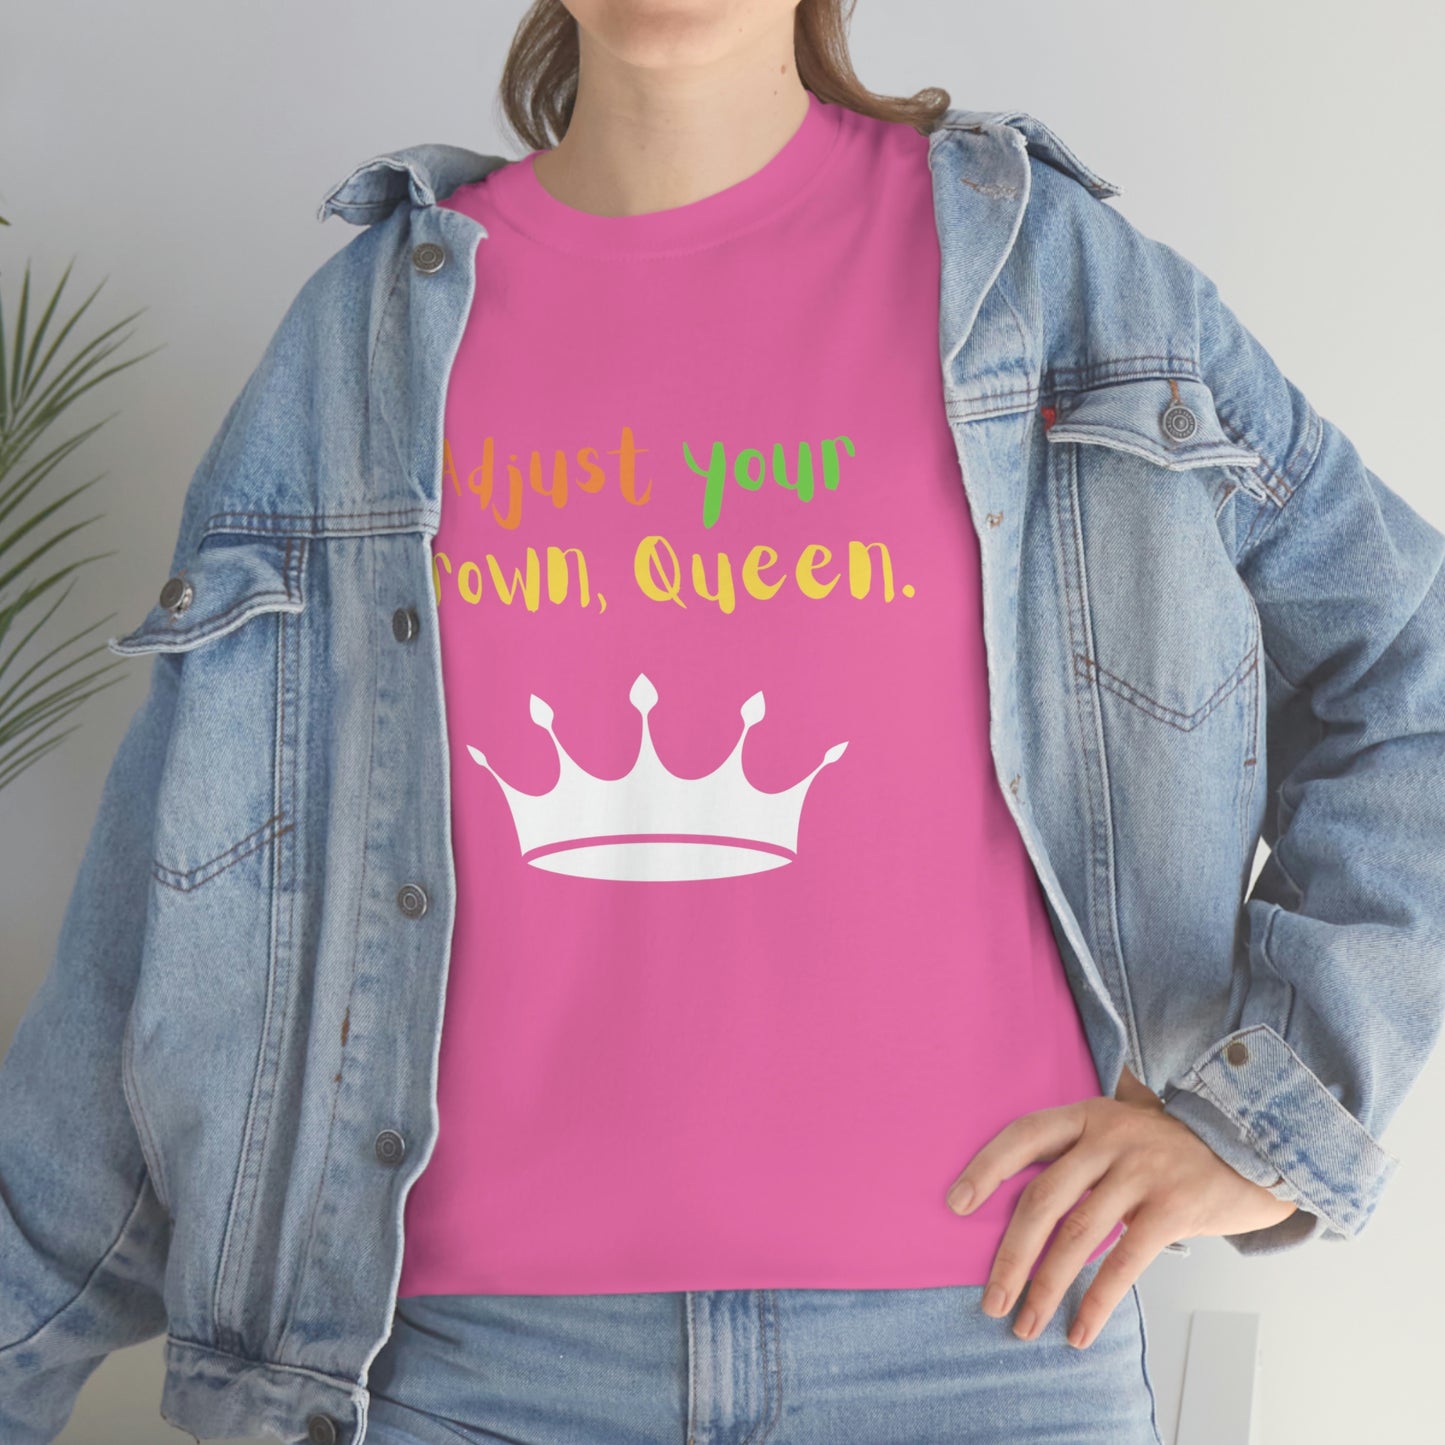 Adjust your crown, Queen T-Shirt